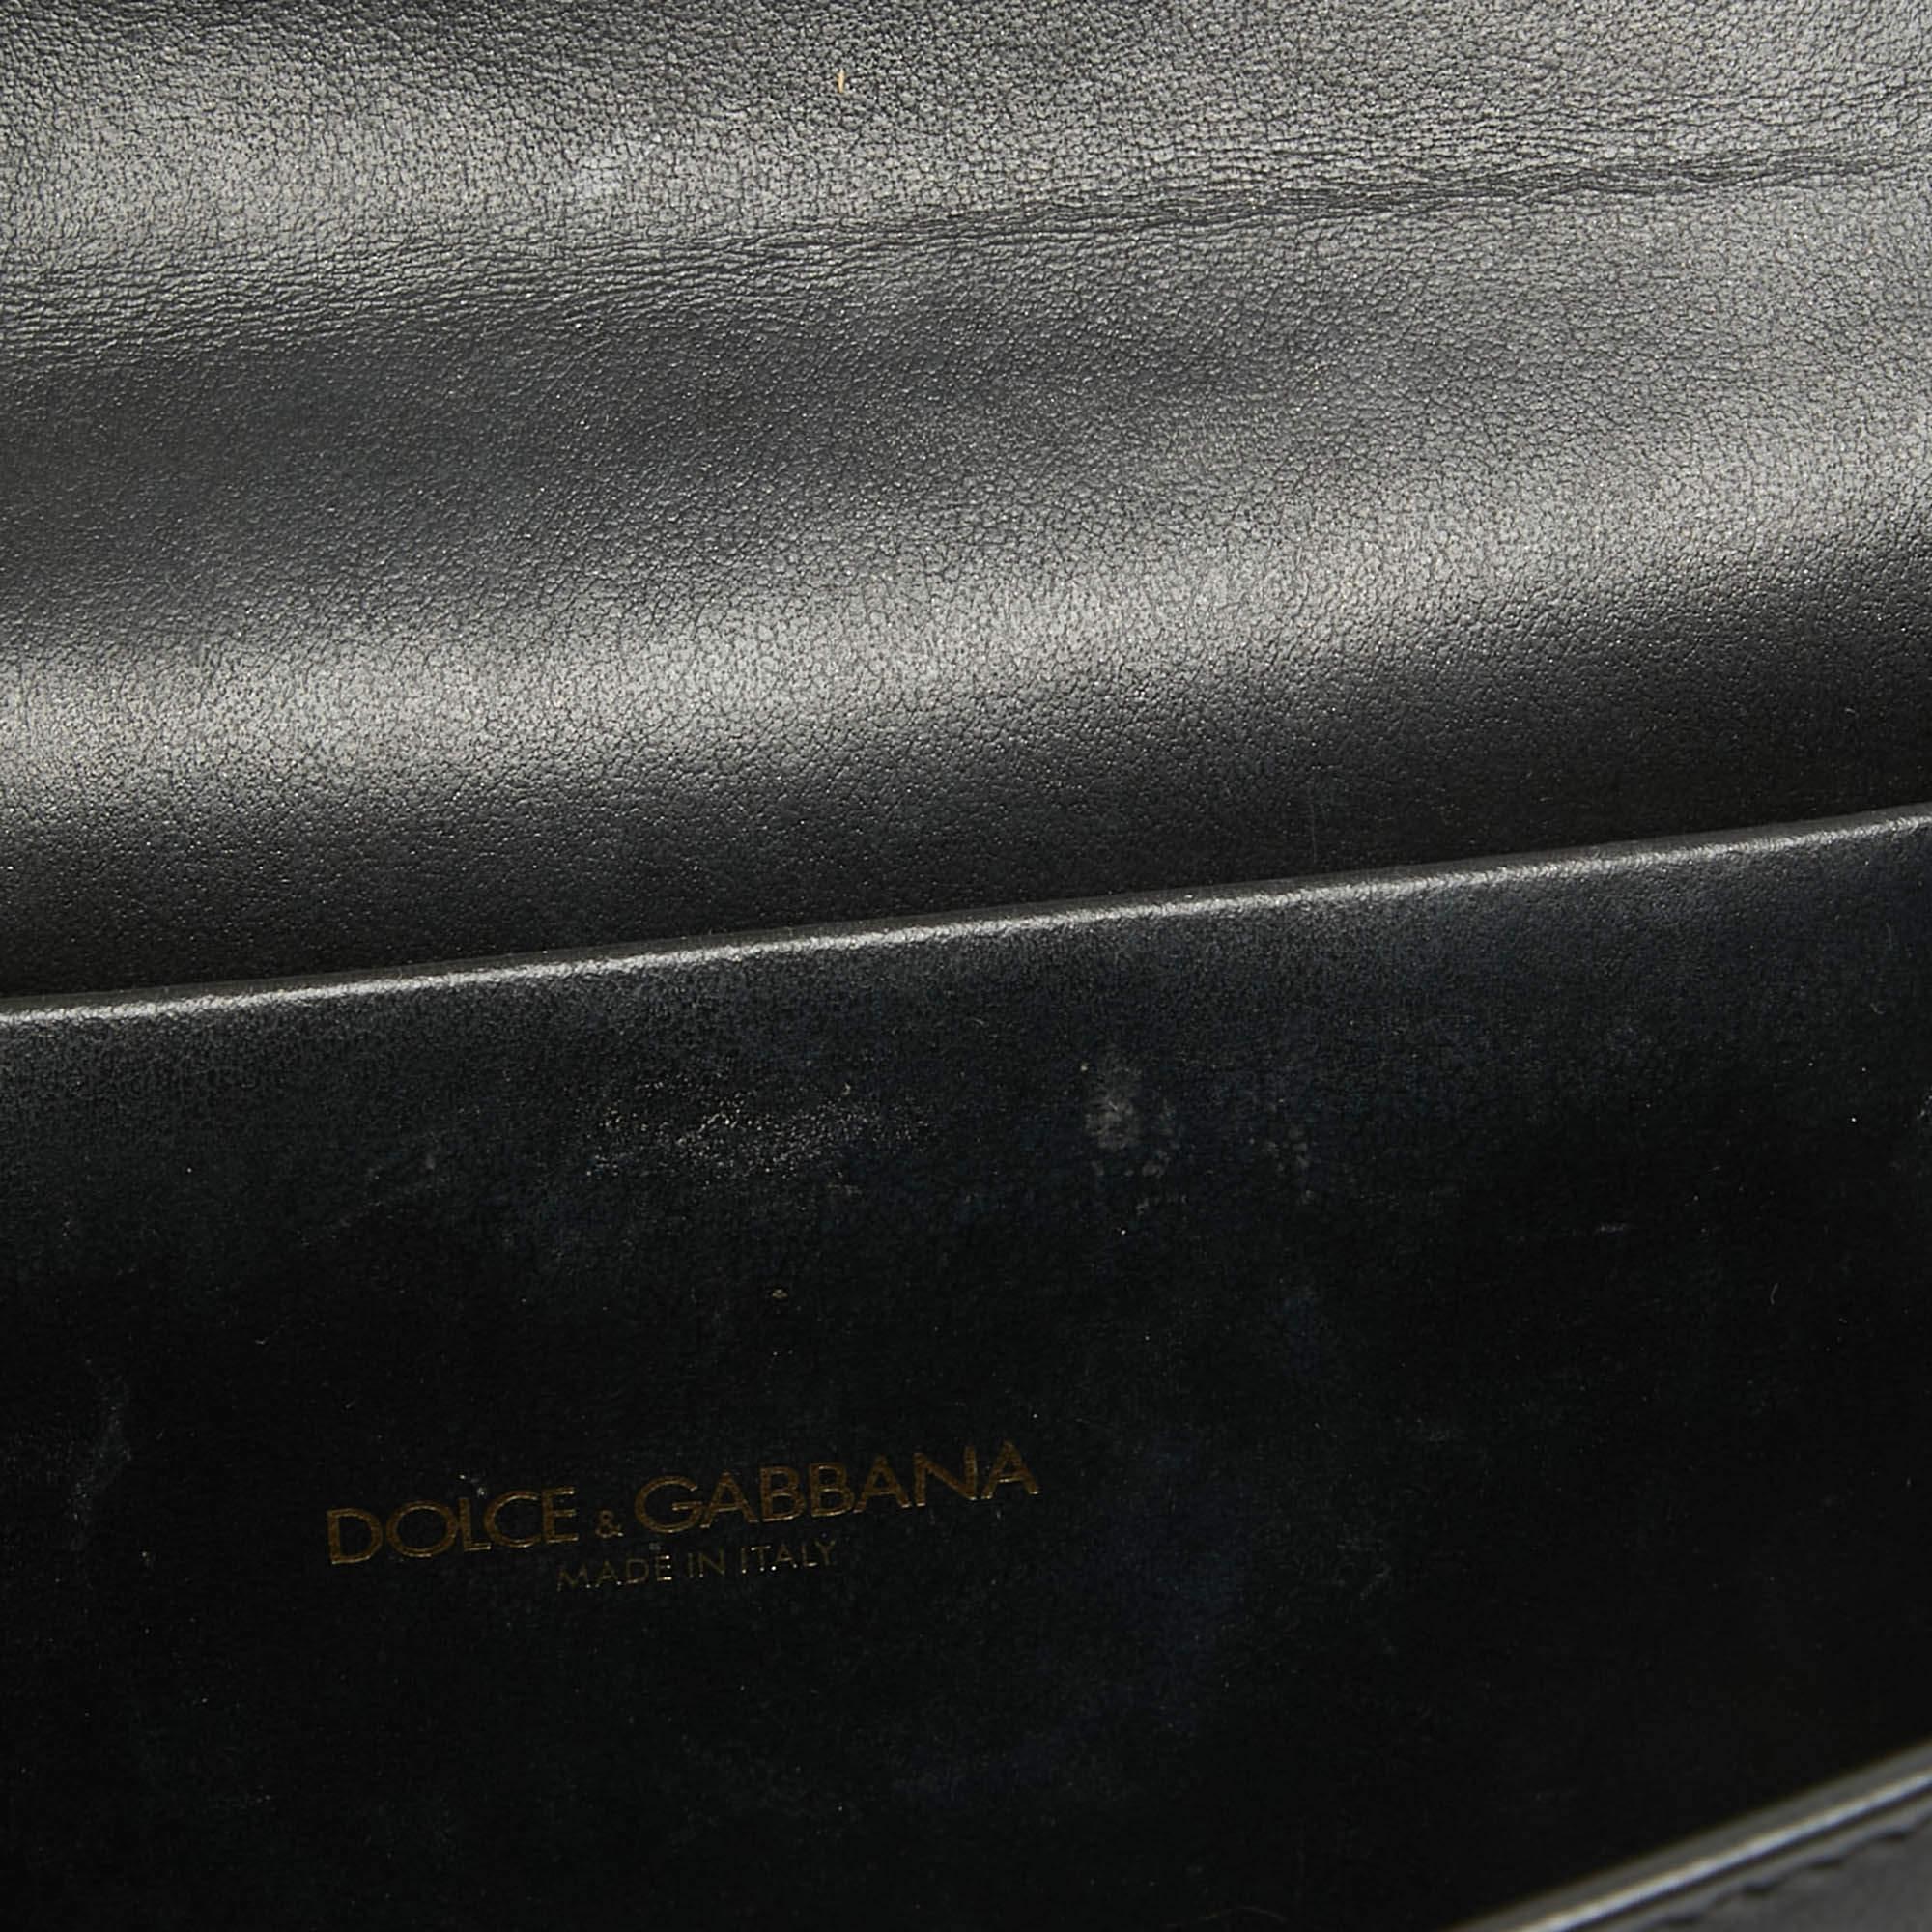 Dolce & Gabbana Black Leather Devotion Belt Bag For Sale 8